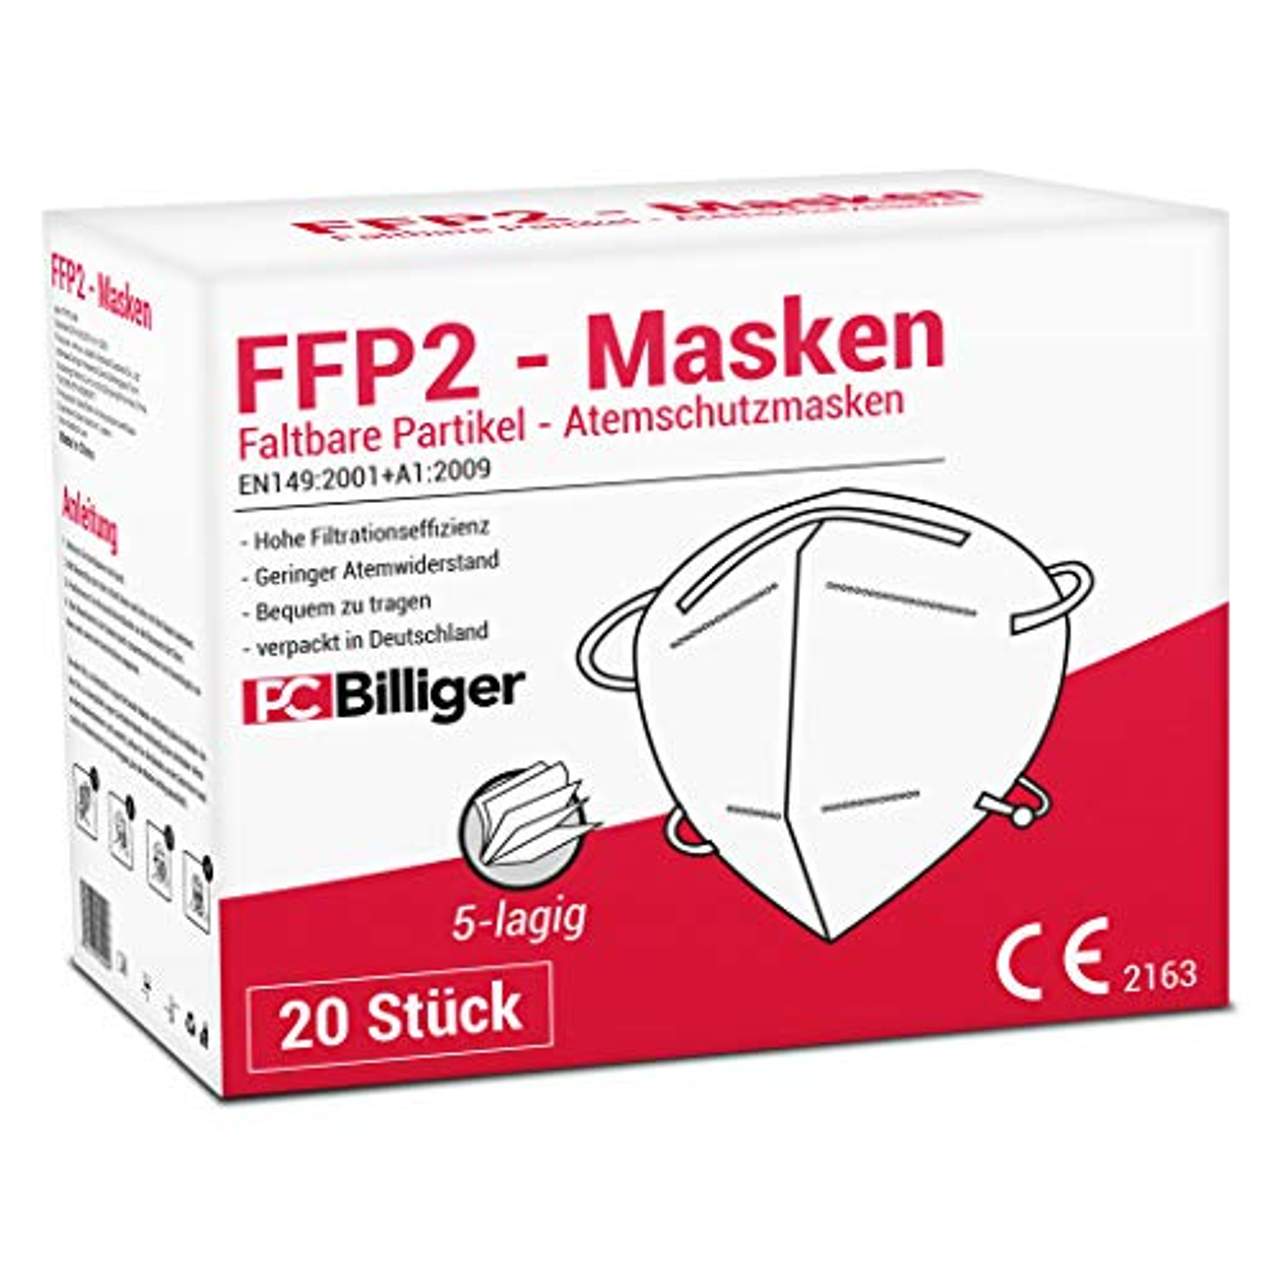 20 Stück FFP2 Masken Mundschutz 5-lagig CE Zertifiziert Maske